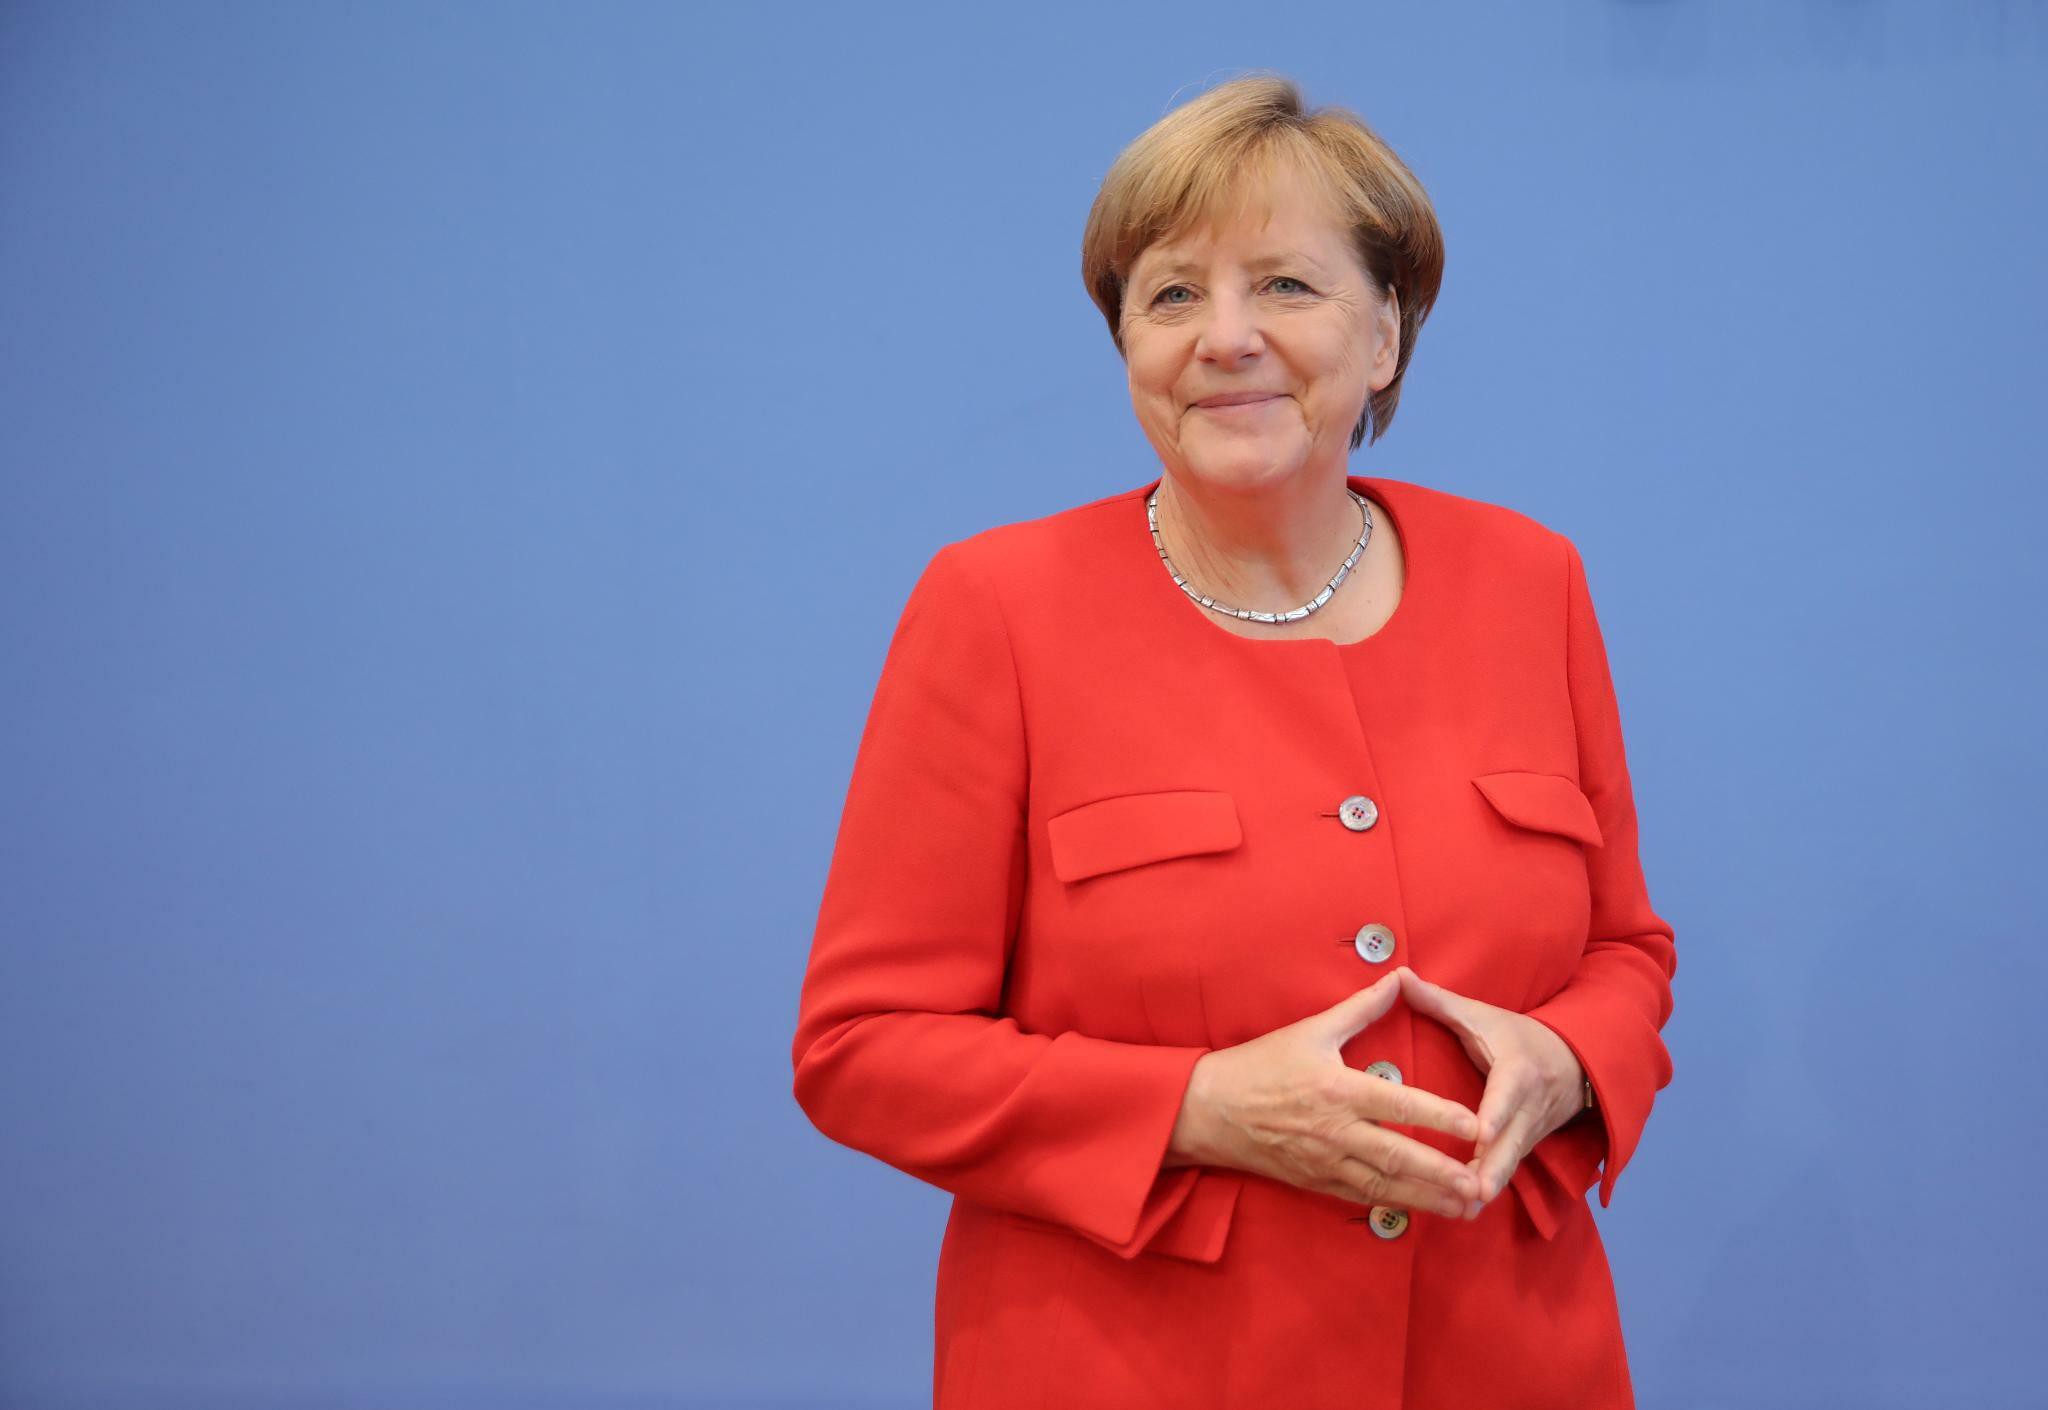 Белокурая девочка с куклой в коляске: в Сети показали архивное фото с Ангелой Меркель